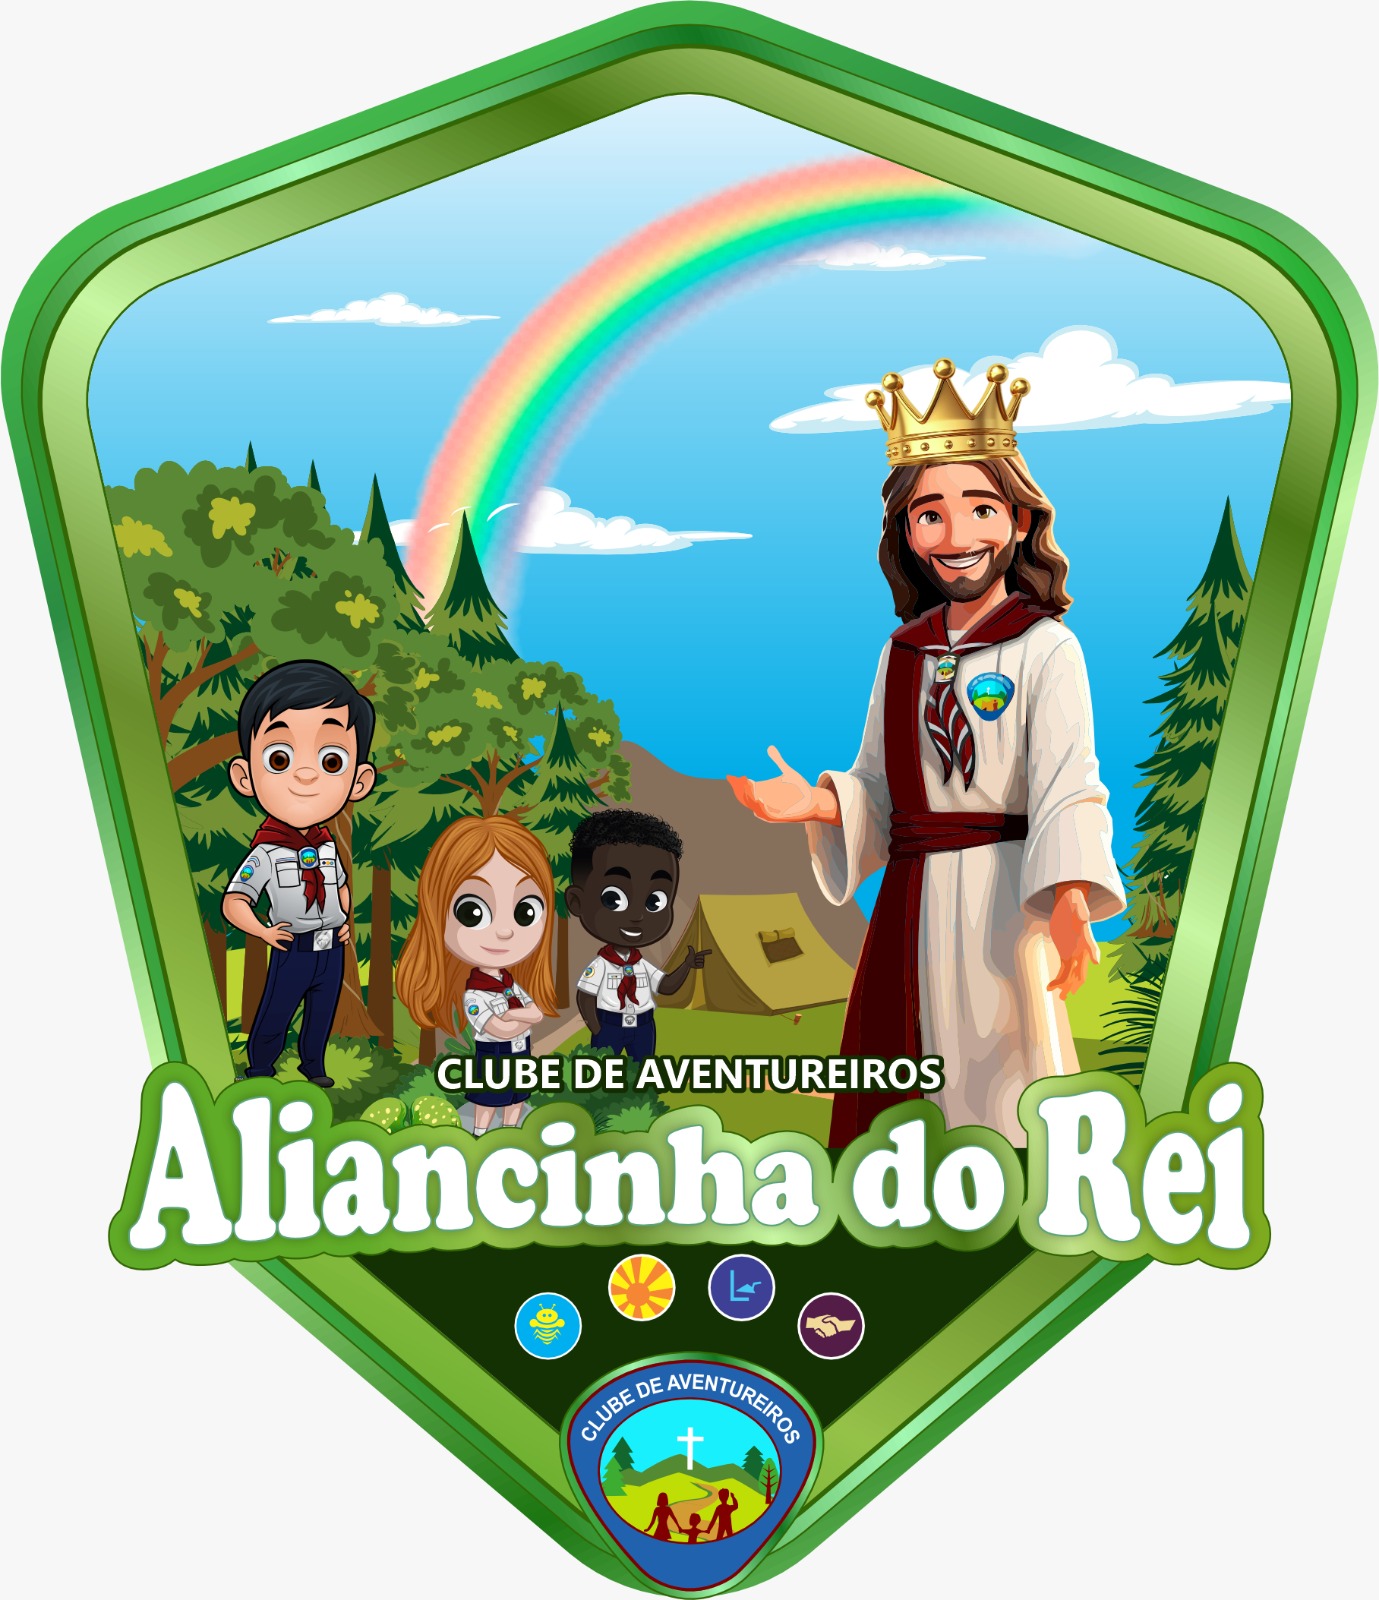 ALIANCINHA DO REI